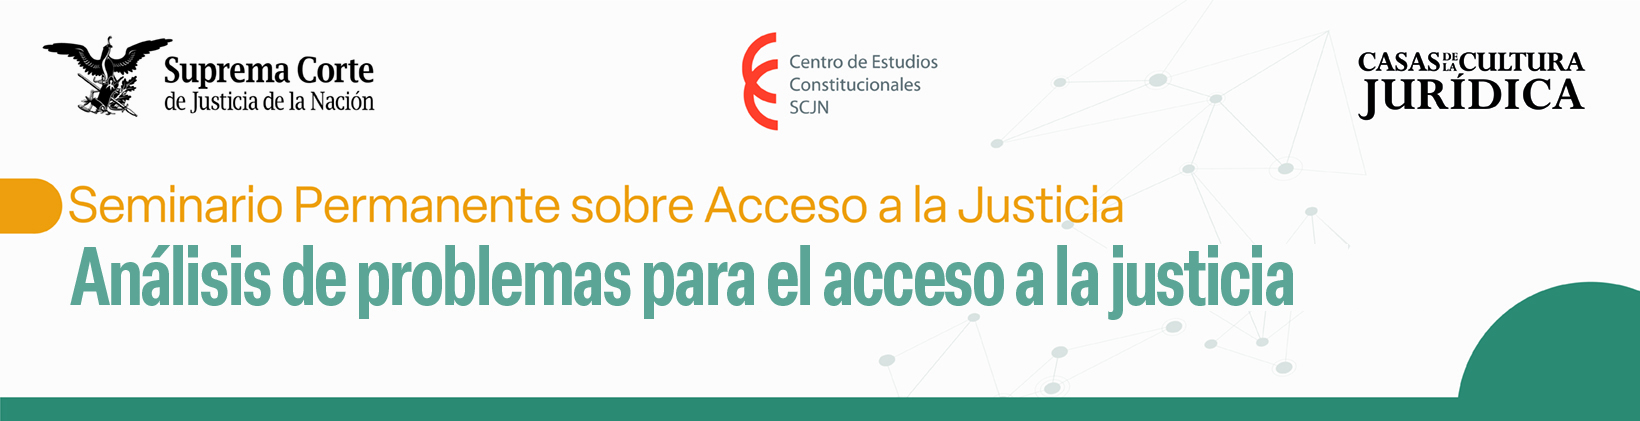 Banner del Seminario Permanente de Acceso a la Justicia: Análisis de problemas para el acceso a la justicia